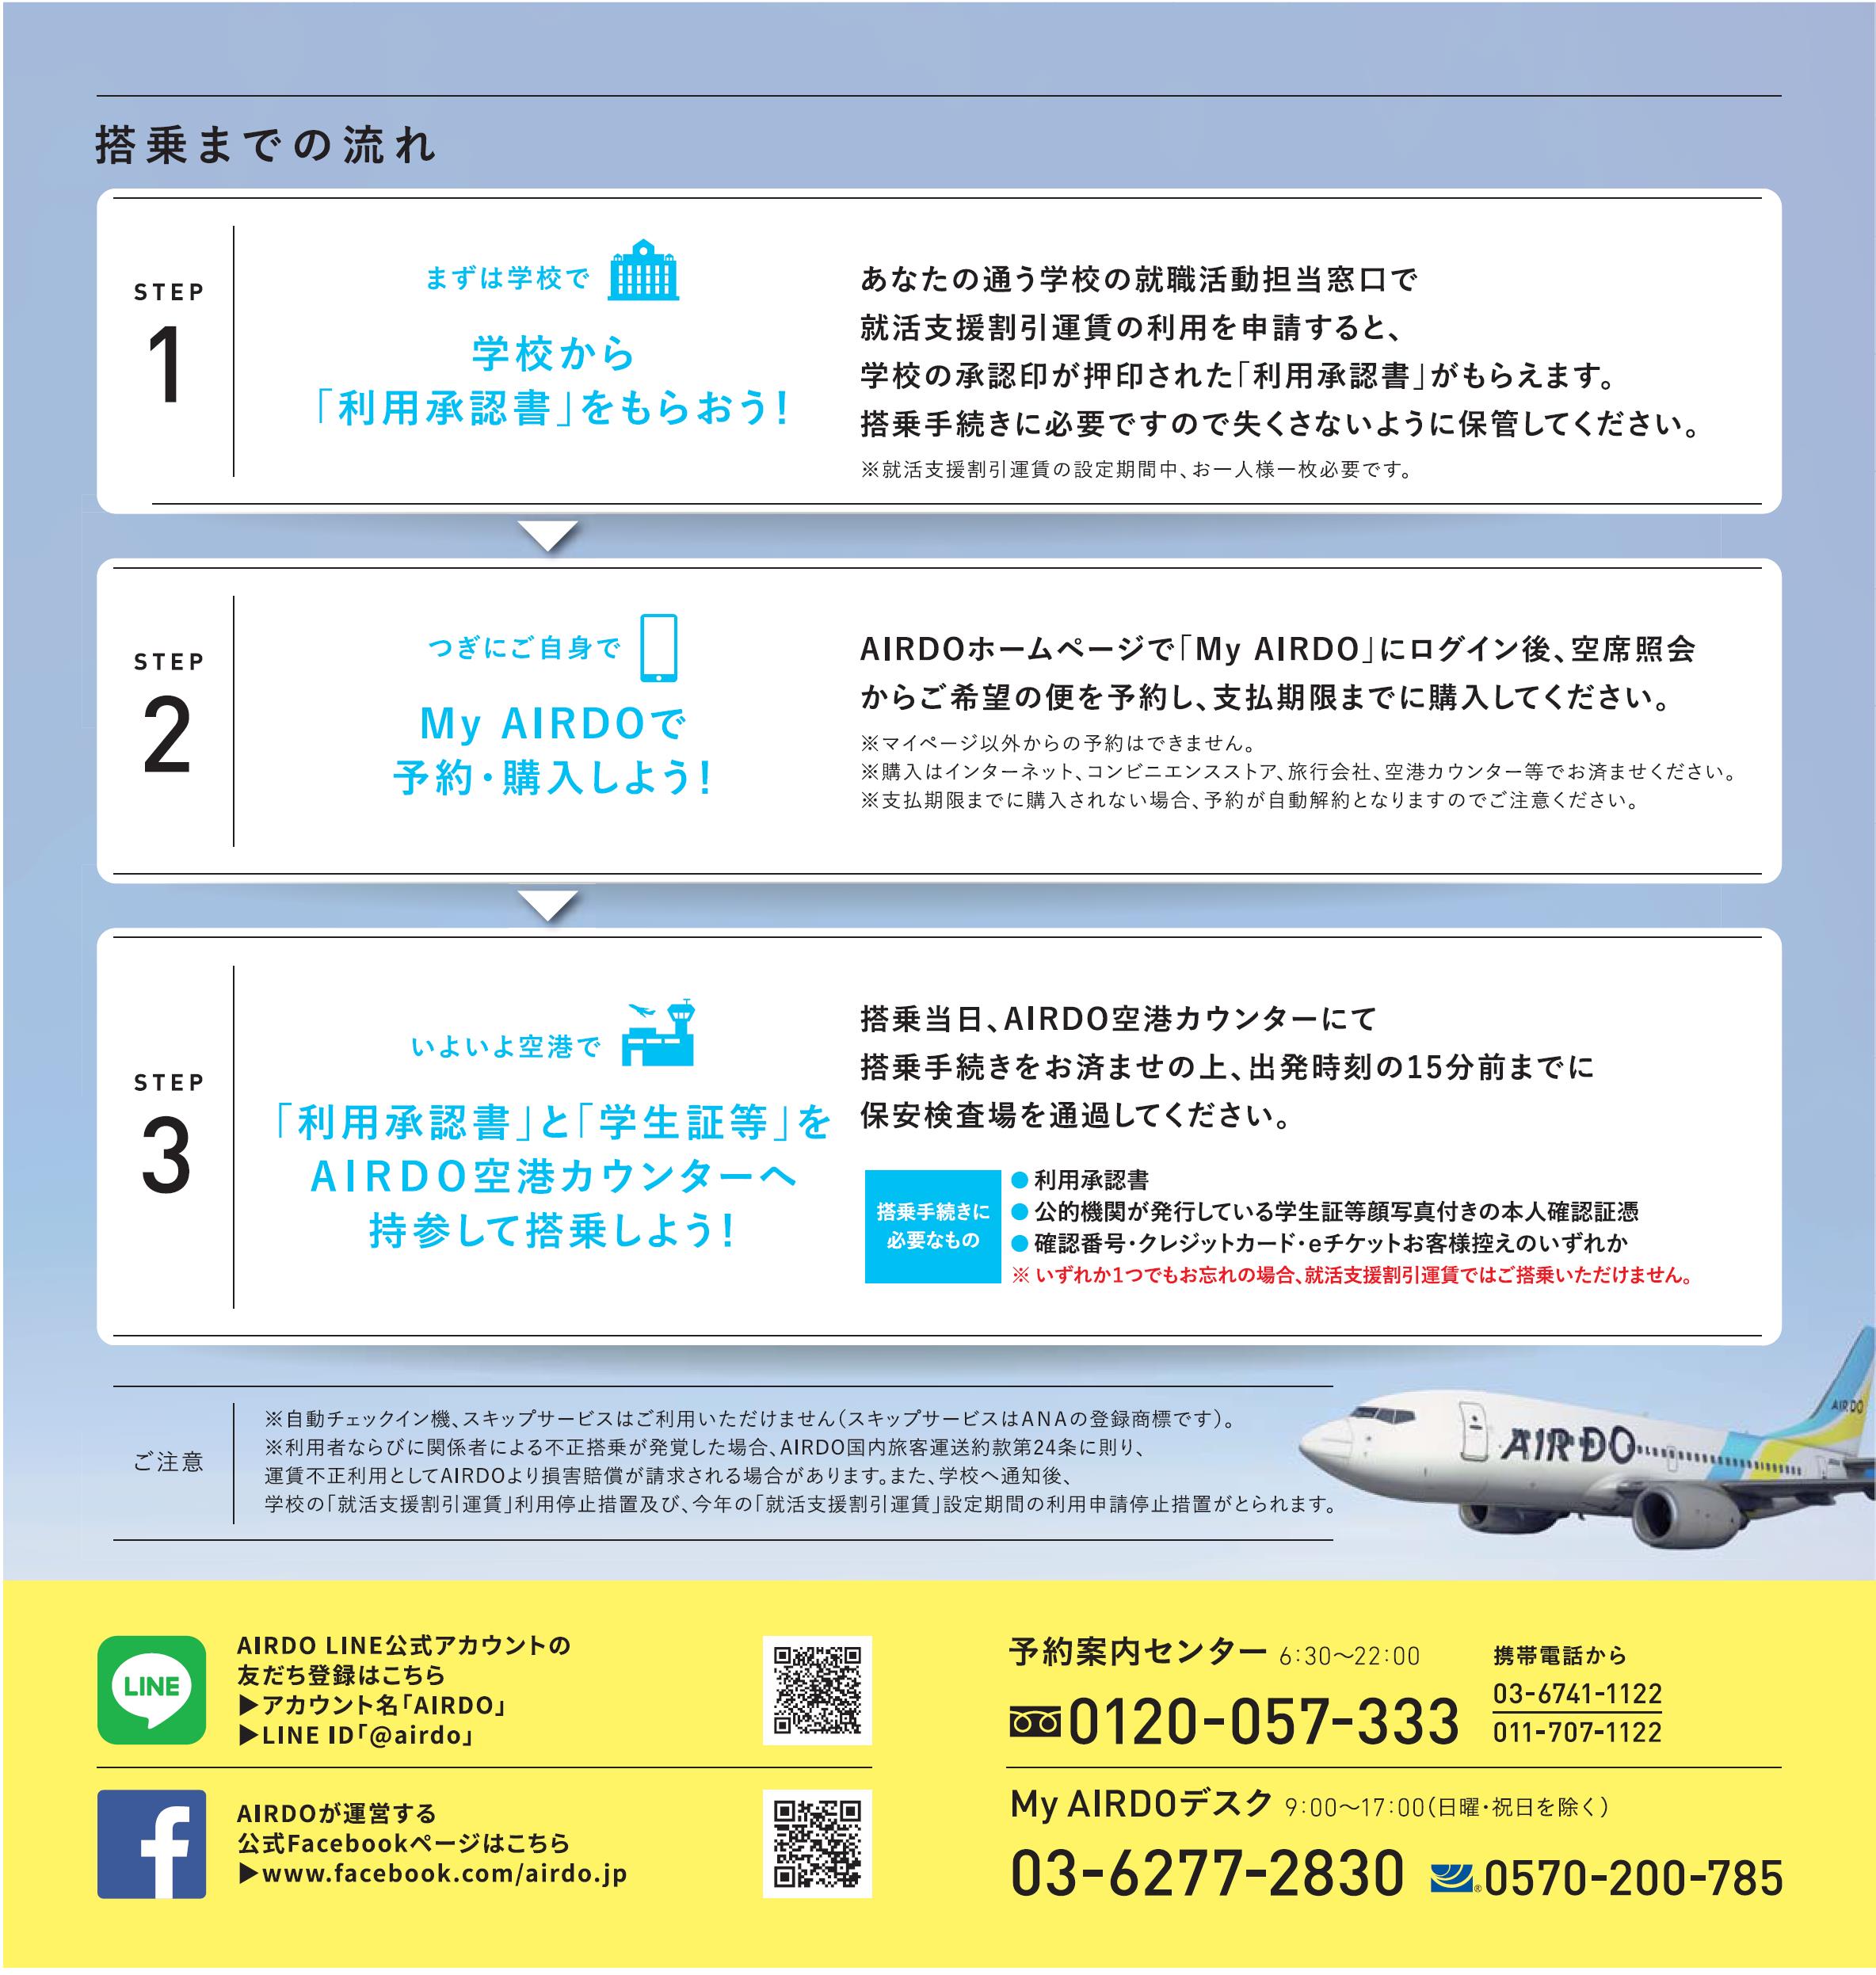 包括連携協定に基づく 北海道 と 株 Airdo による取り組み 就活支援割引運賃 の設定について プレスリリース Airdoについて 北海道発着の飛行機予約 空席照会 Airdo エア ドゥ